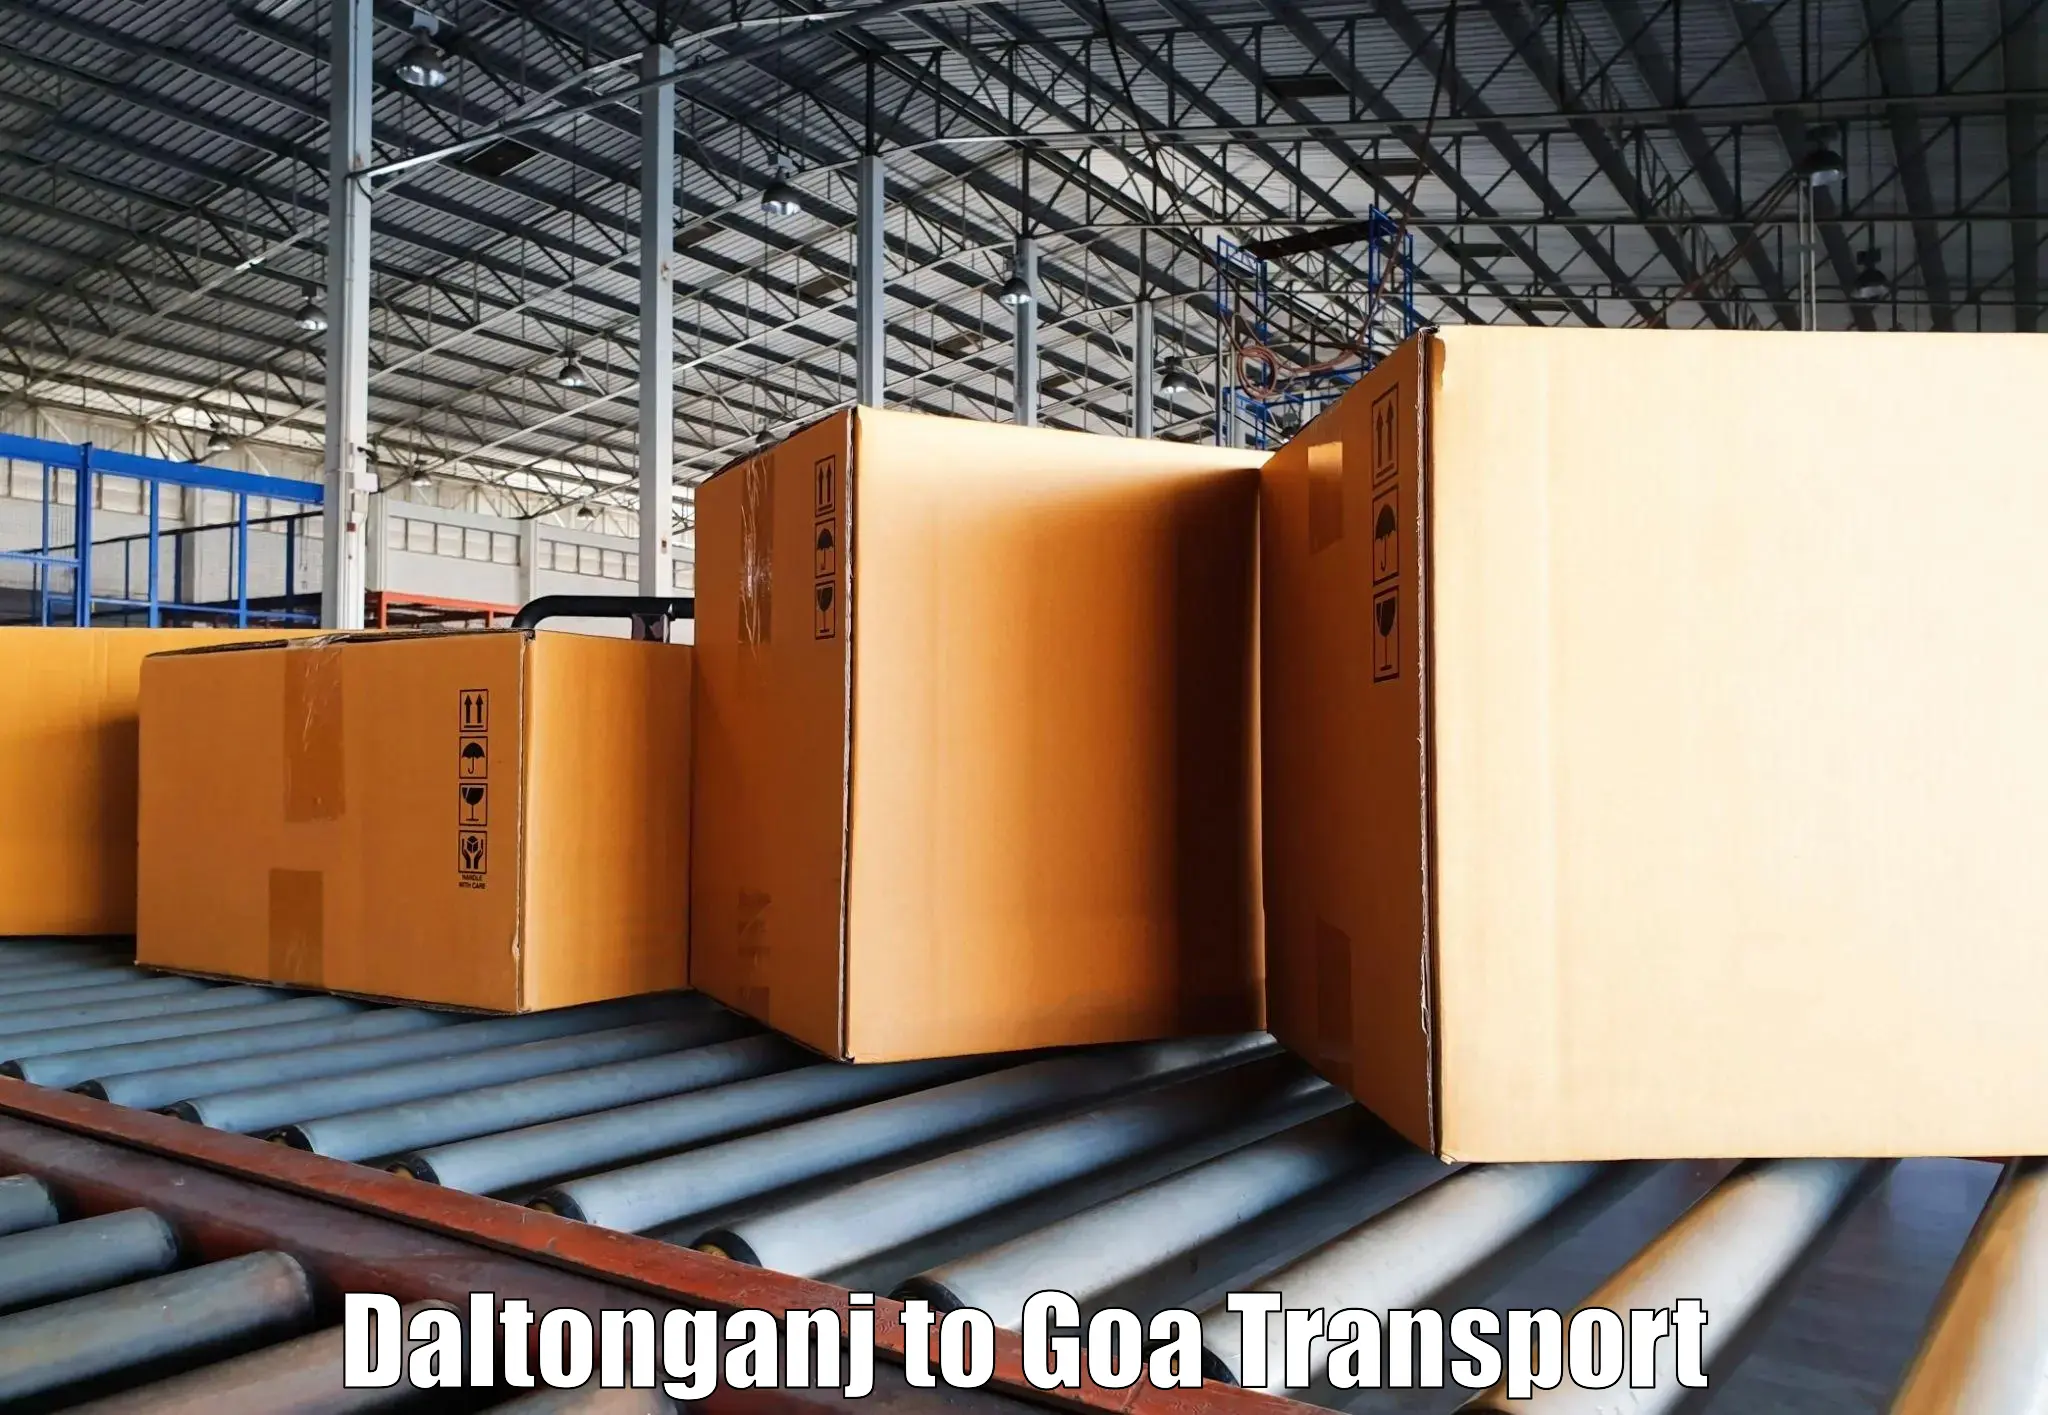 Two wheeler parcel service Daltonganj to Vasco da Gama